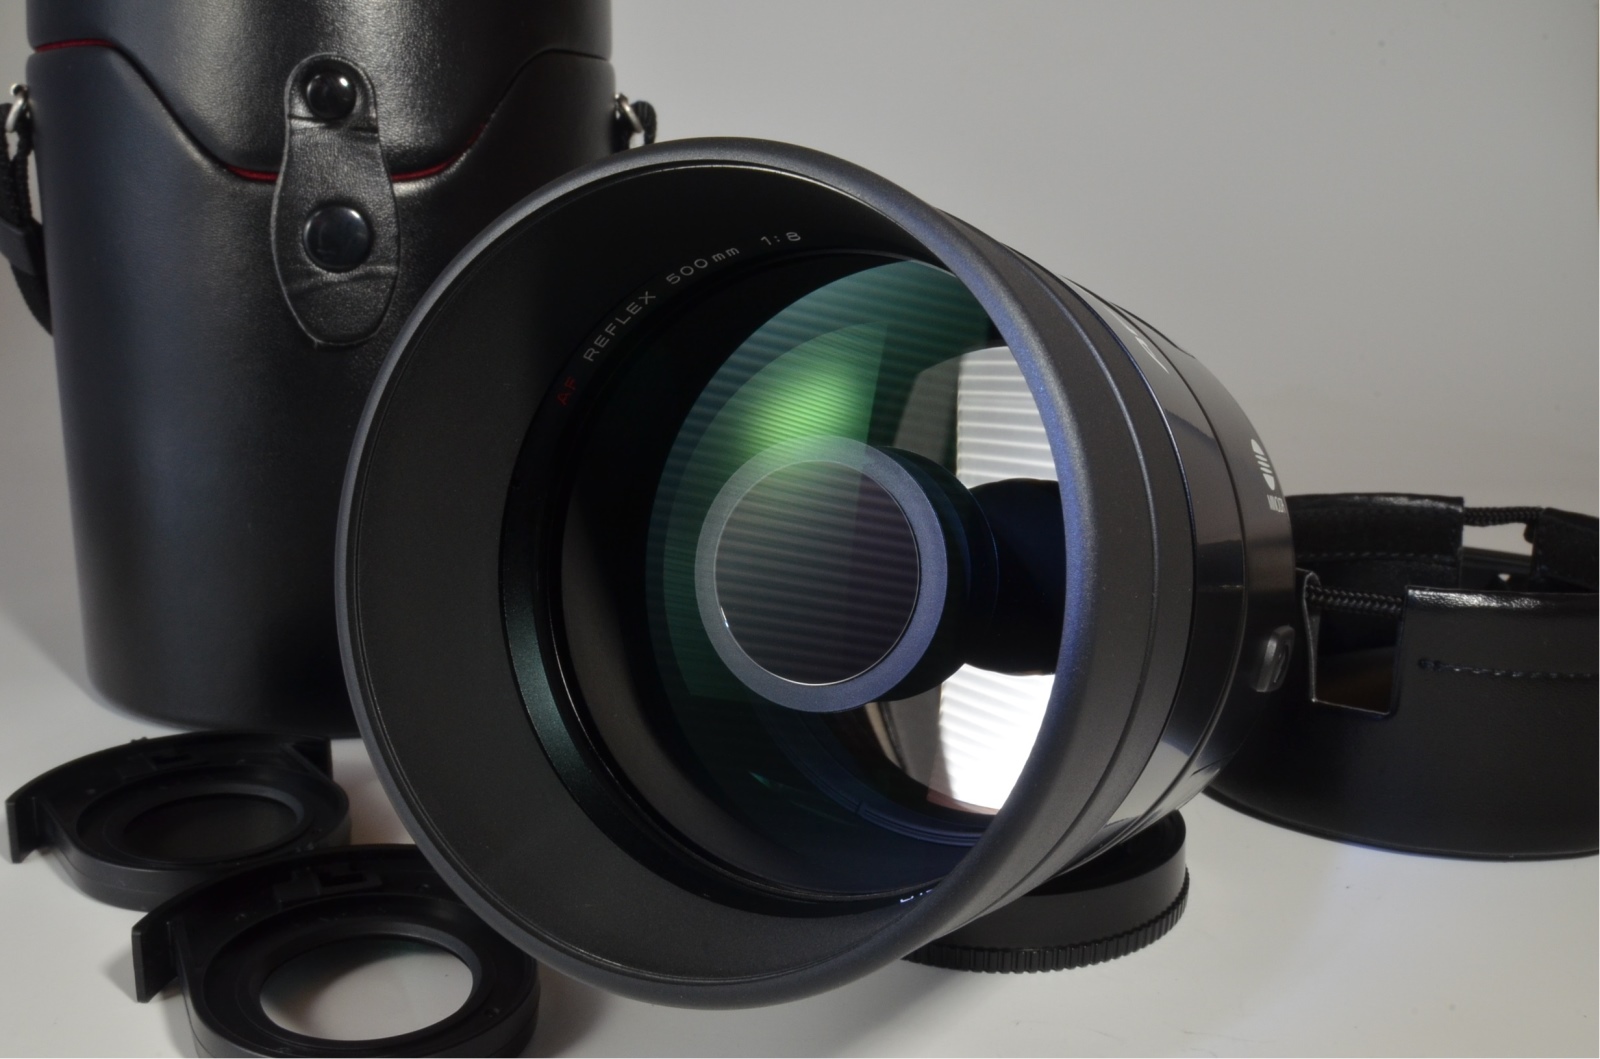 minolta af reflex 500mm f8 mirror lens for sony alpha